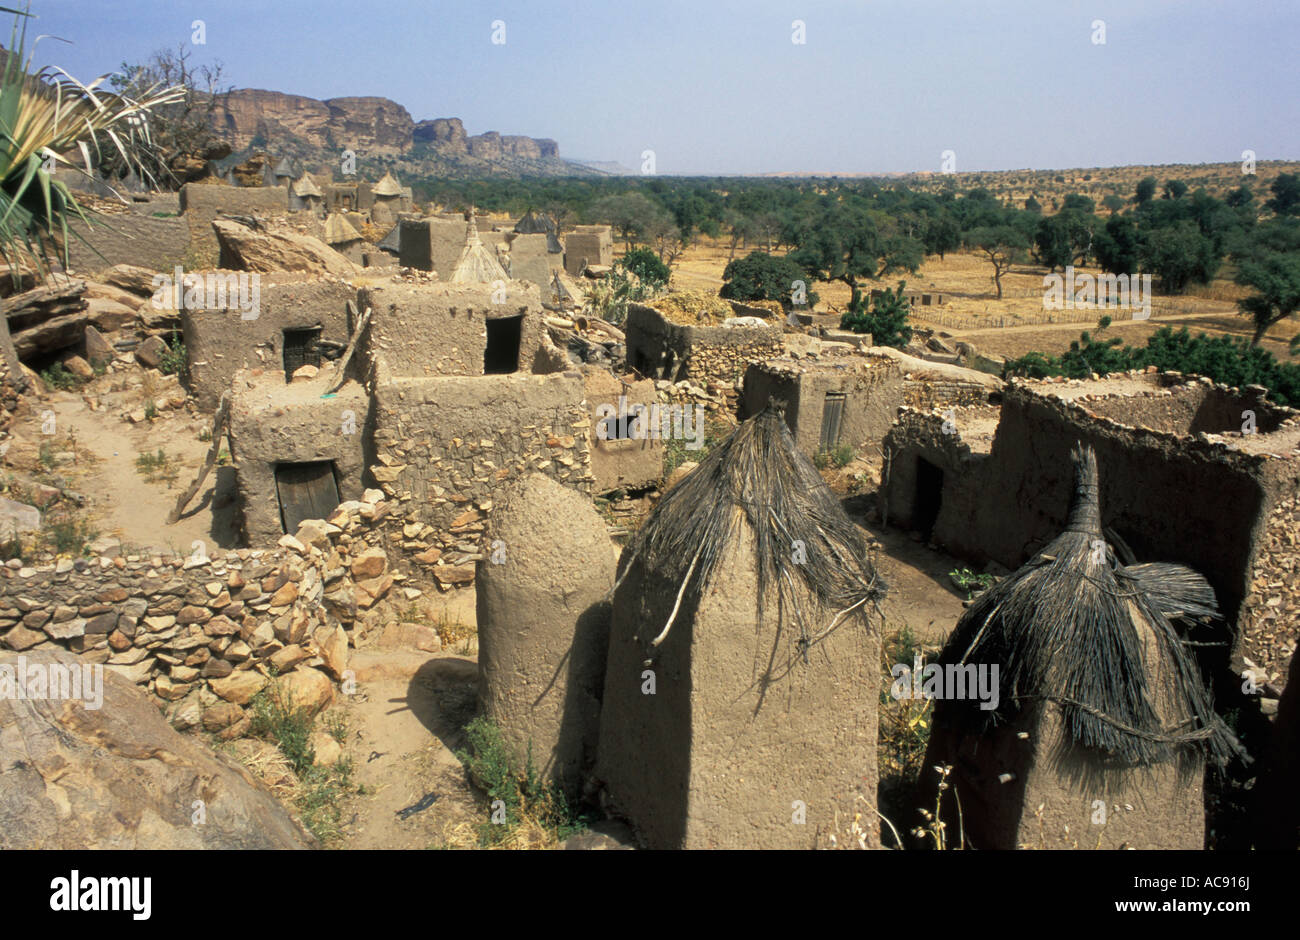 Scenic view of Dogon village on Bandiagara escarpment Dogon country; Mali Stock Photo